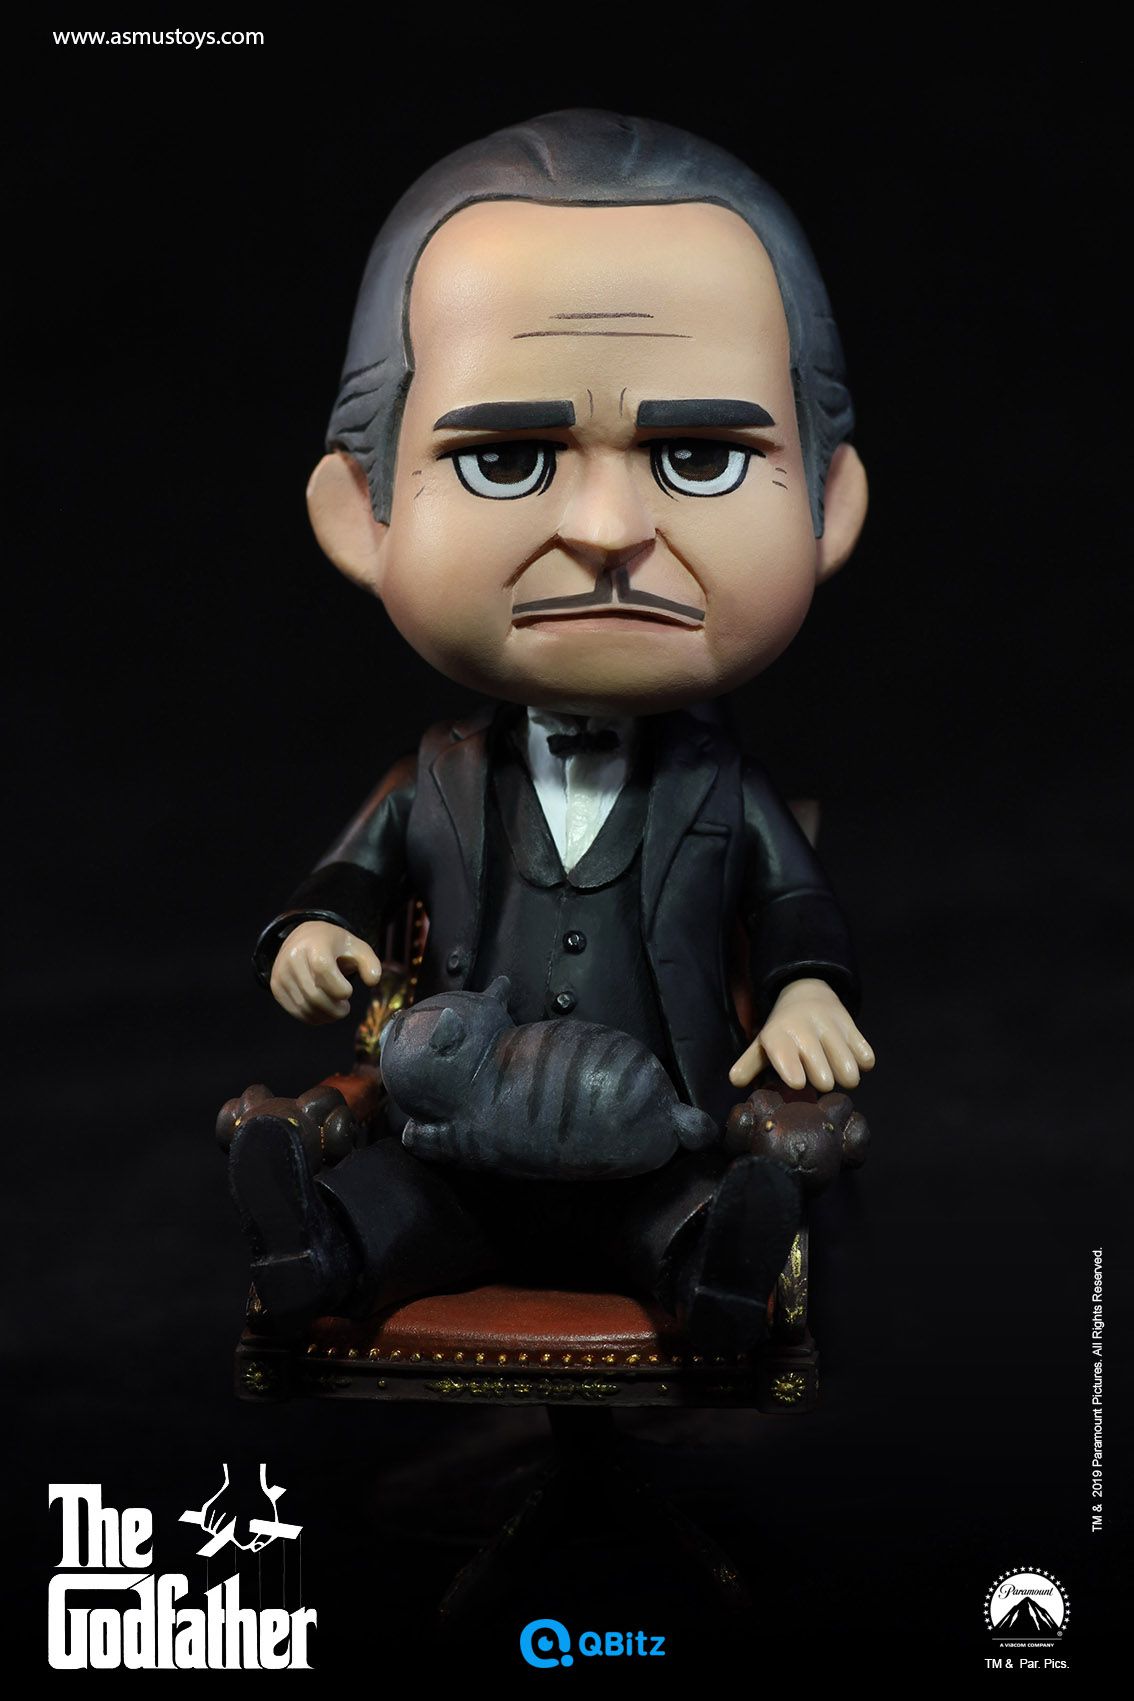 PRÉ VENDA: Action Figure Vito Corleone (QBitz): O Poderoso Chefão (The Godfather) - Asmus Toys